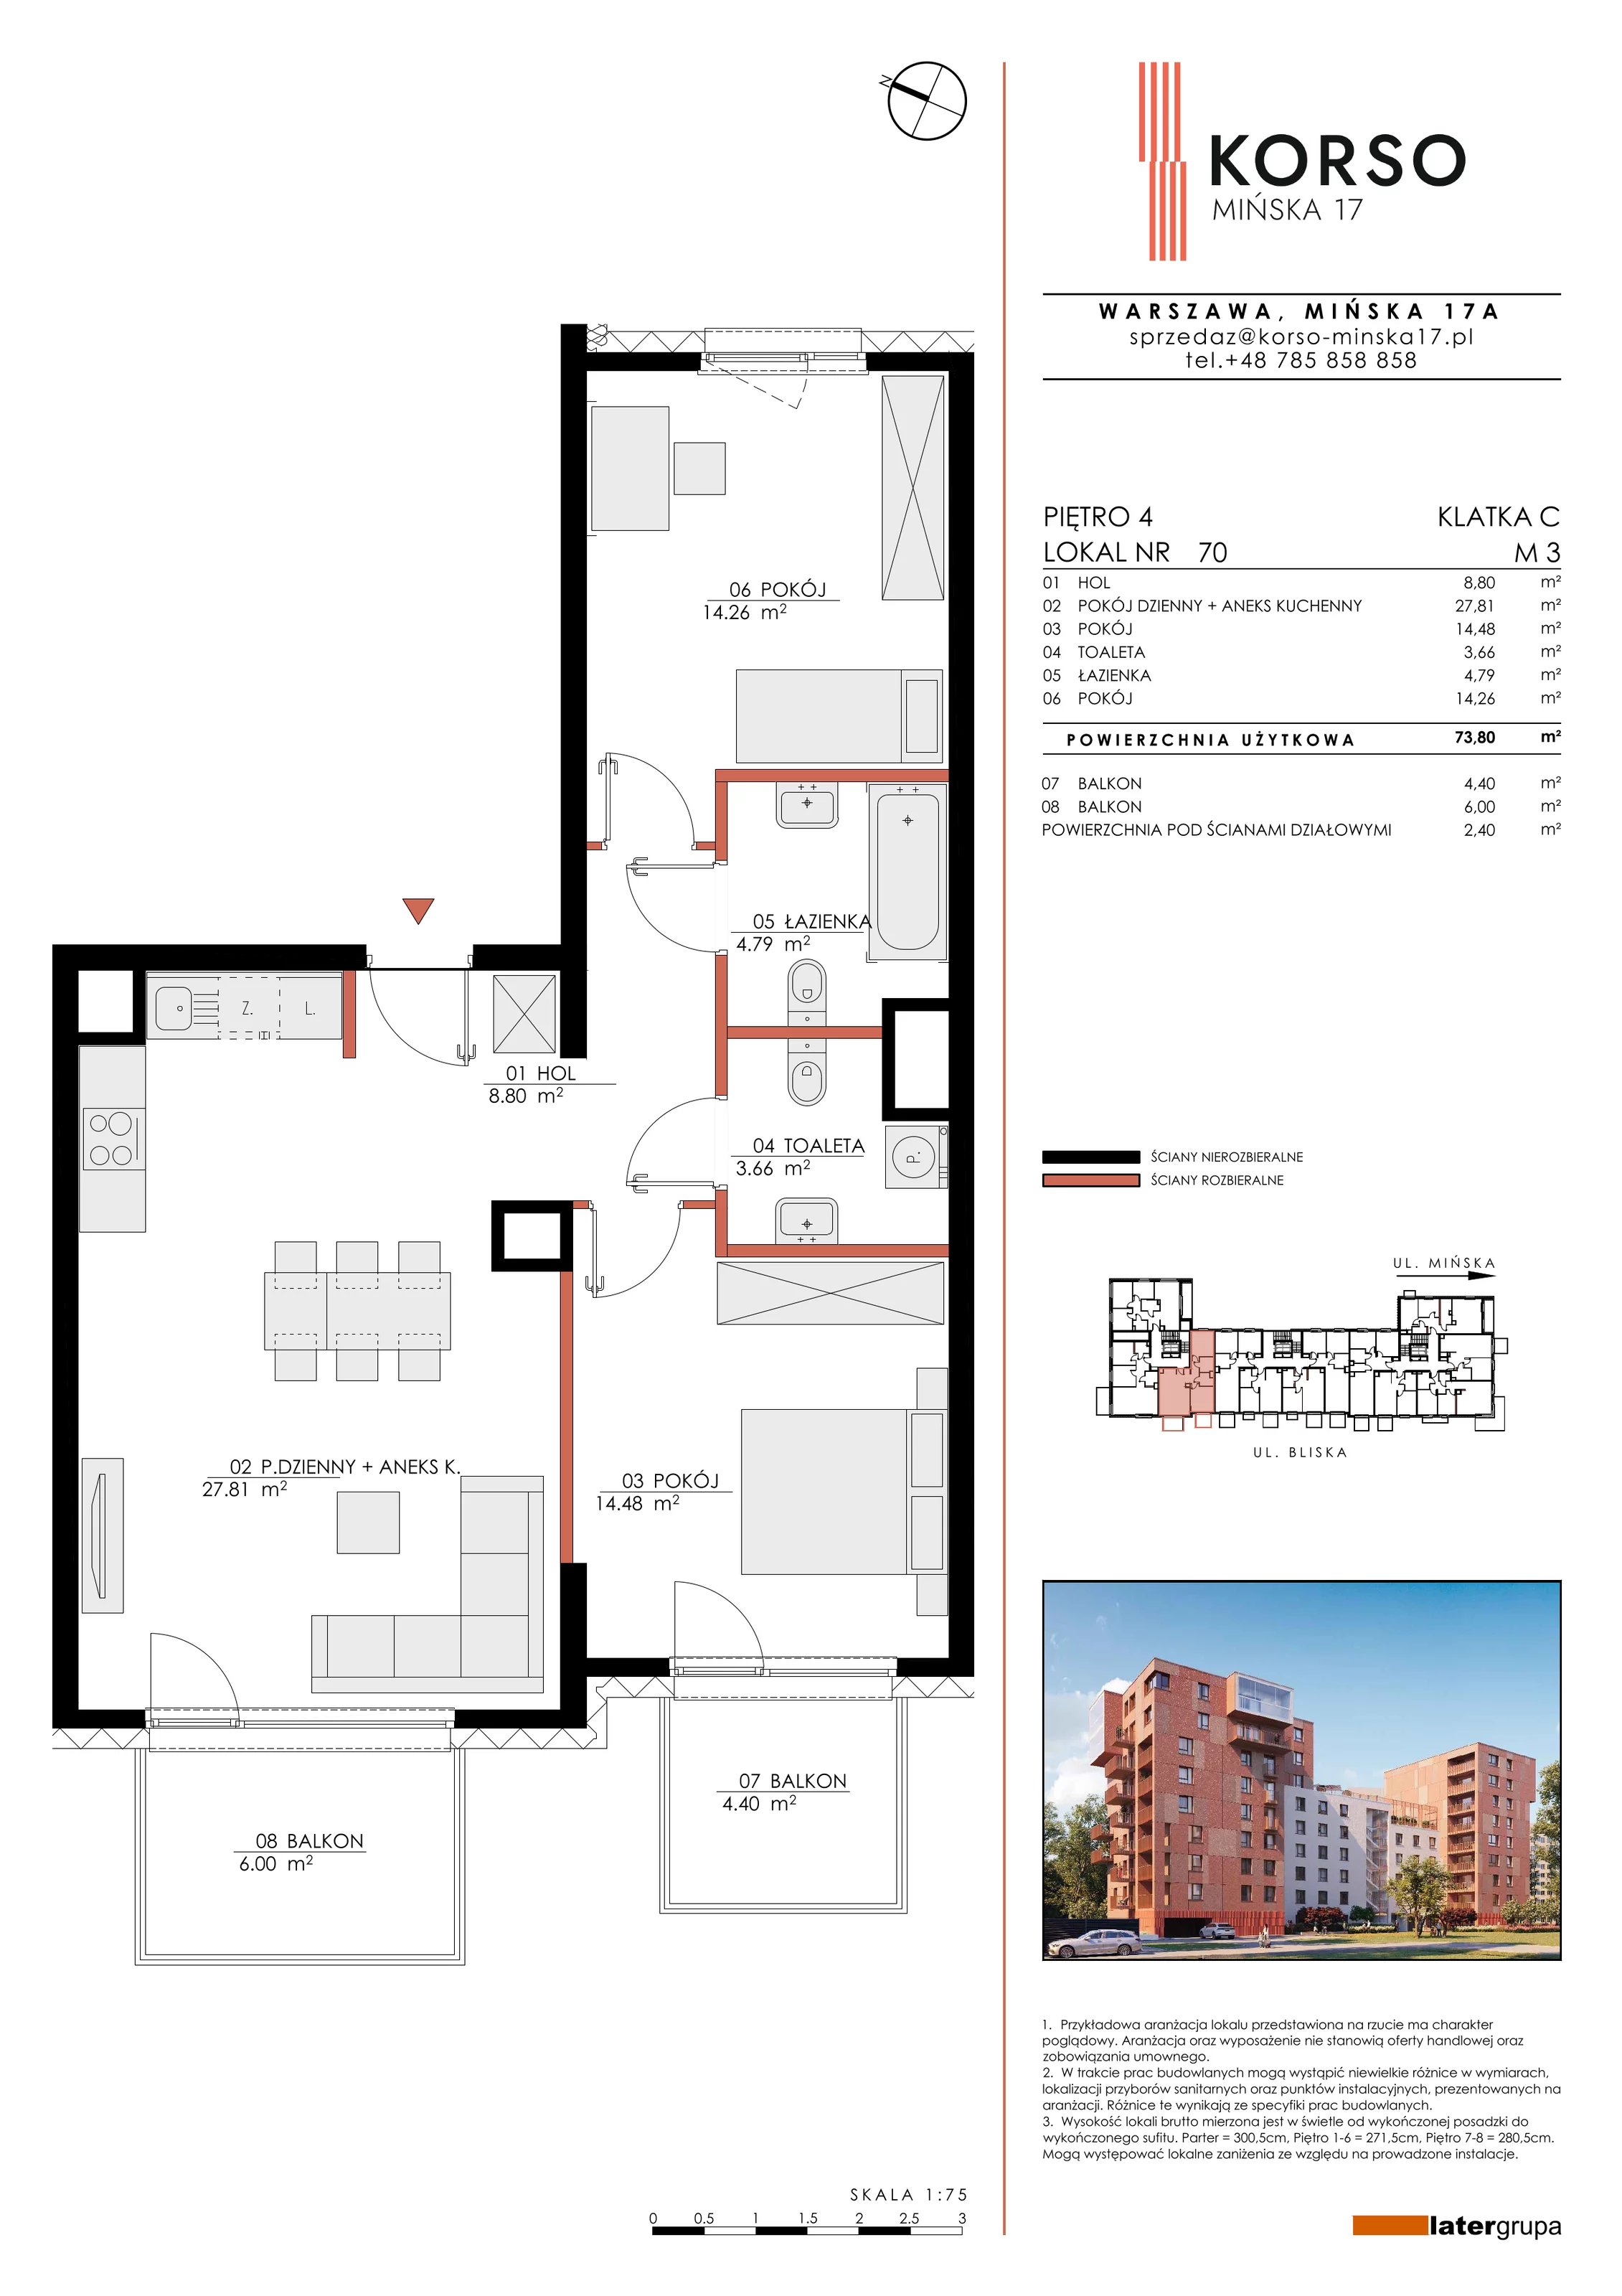 Mieszkanie 73,80 m², piętro 4, oferta nr 70, KORSO Mińska 17, Warszawa, Praga Południe, Kamionek, ul. Mińska 17